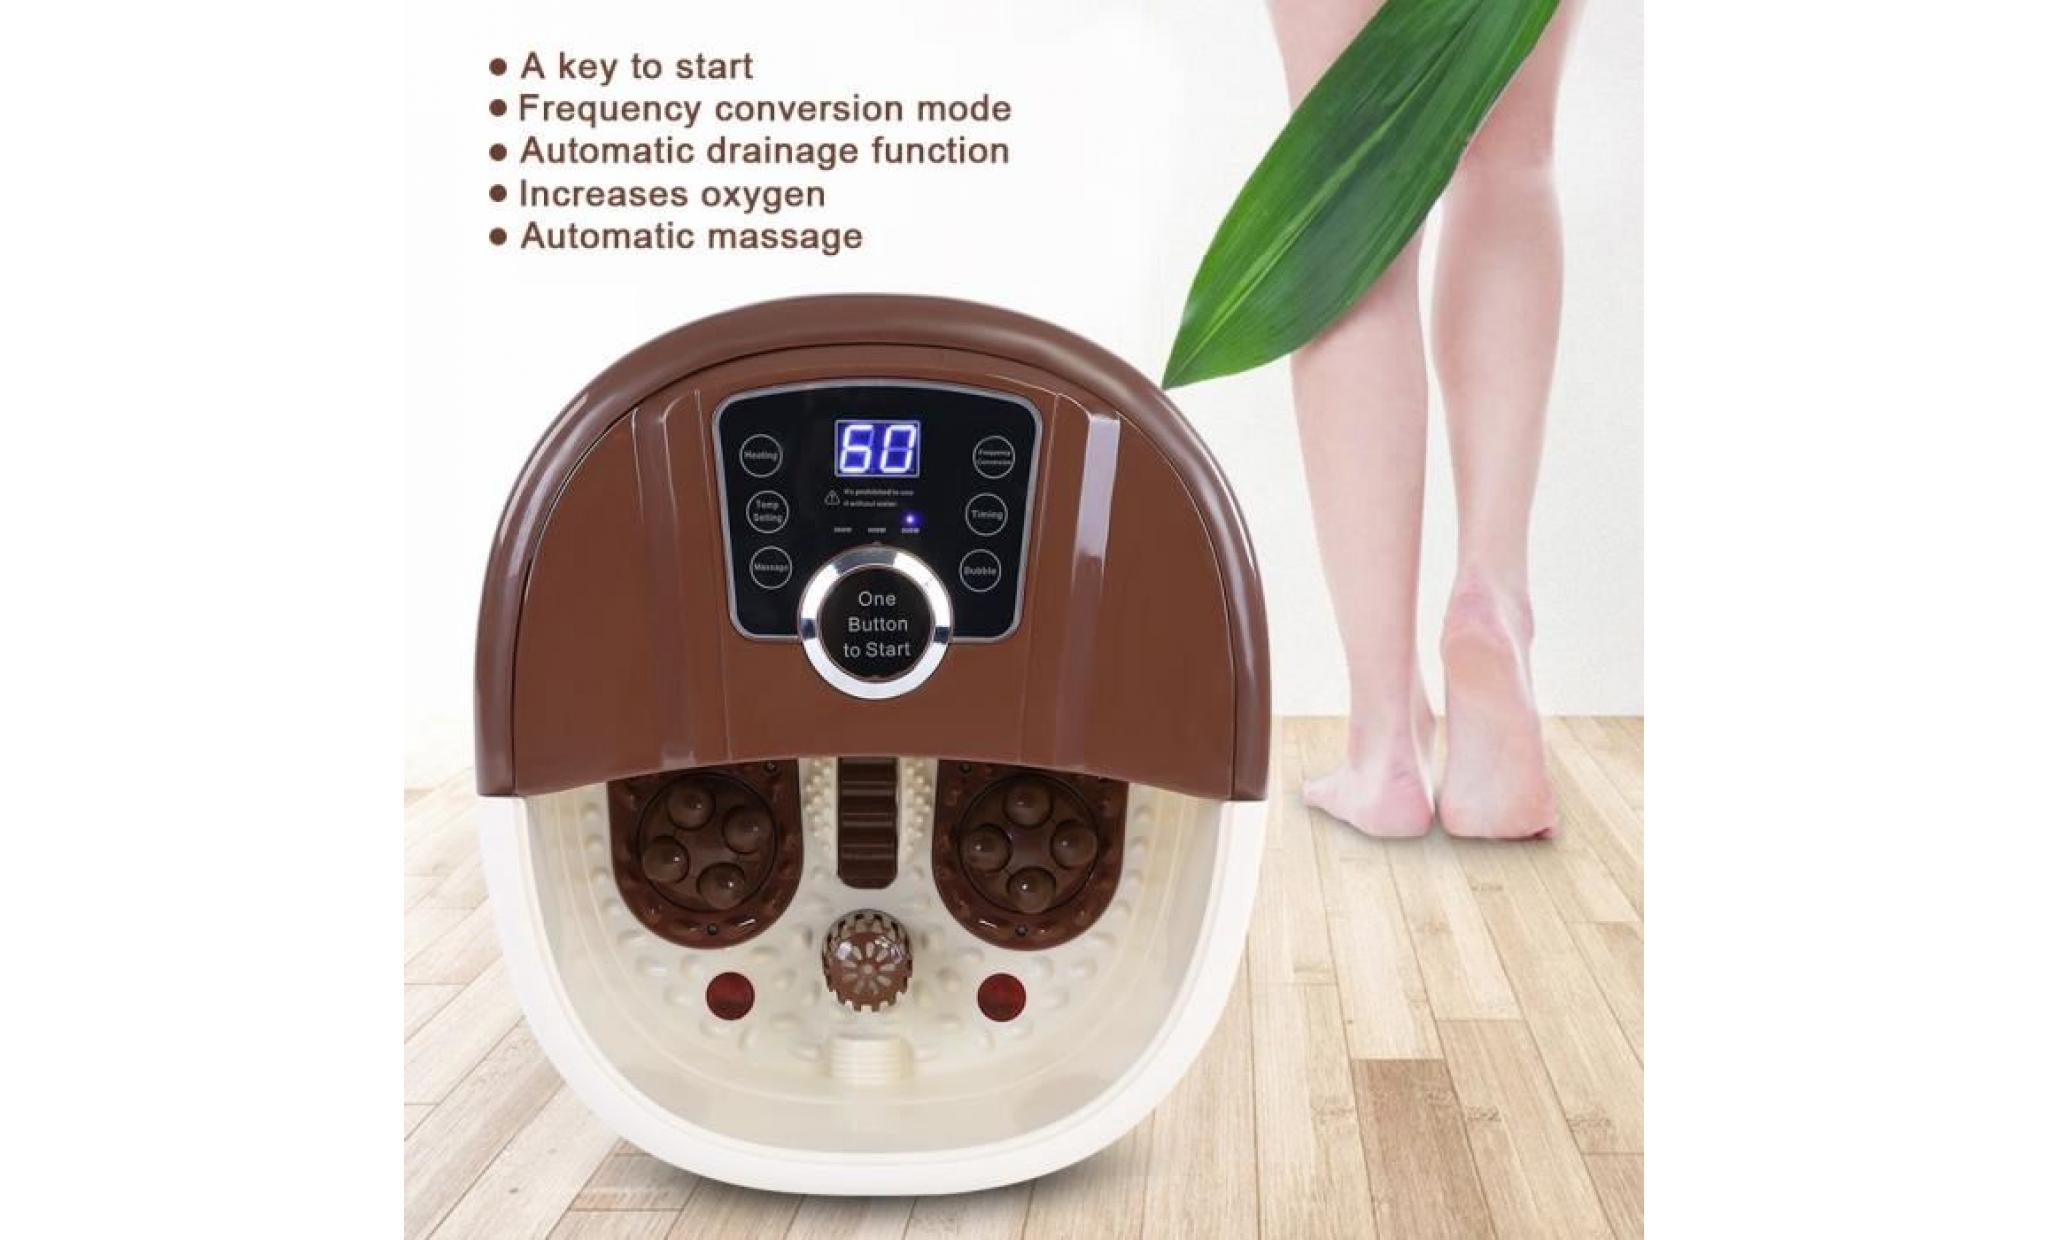 fihero 500w appareil de massage baignoire portable pied spa bain de chaleur soaker vibration pédicure soak tub   marron clair pas cher